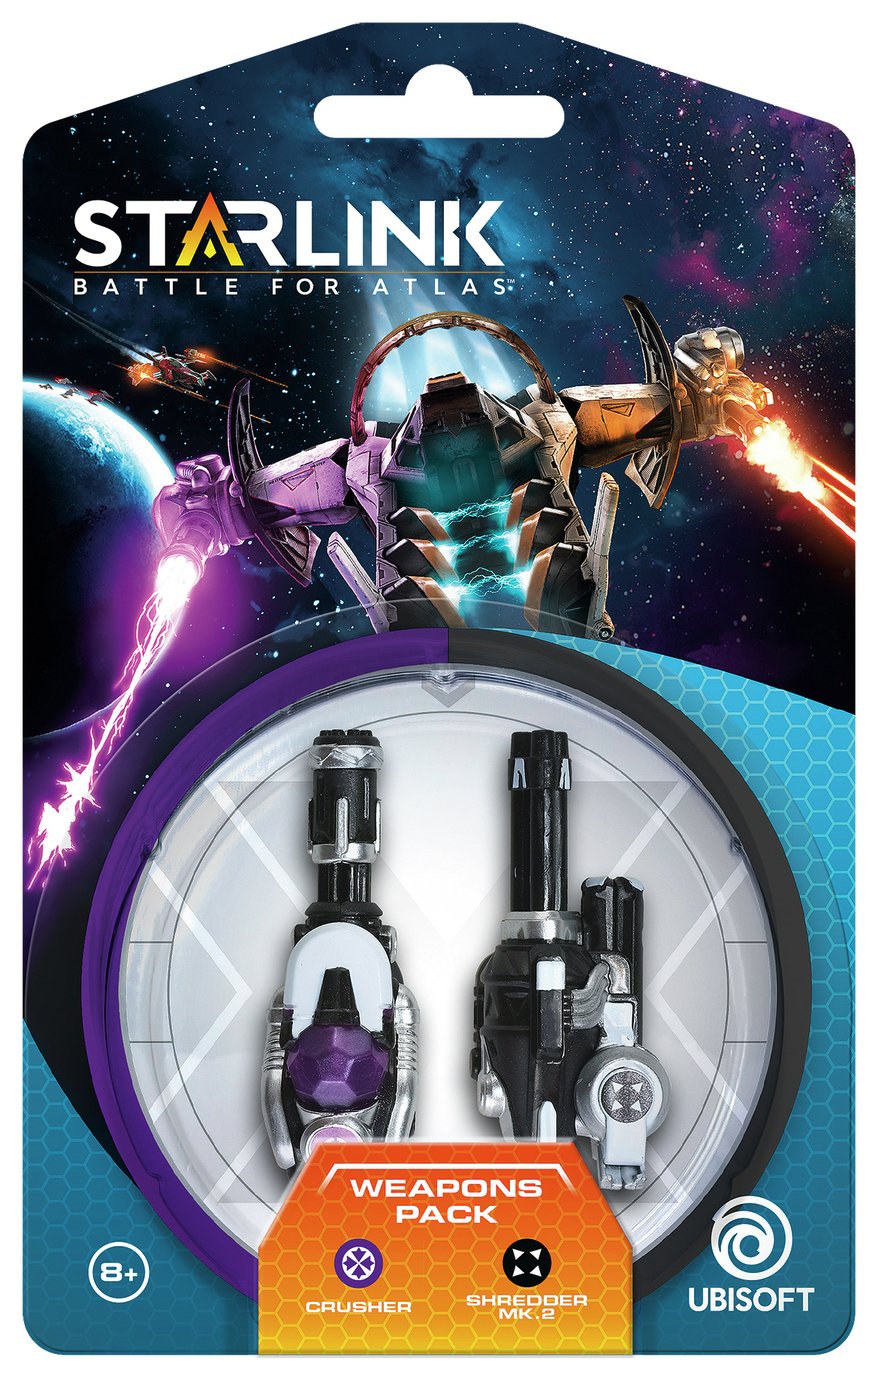 Starlink: Battle For Atlas Weapons Pack: Crusher & Shredder review